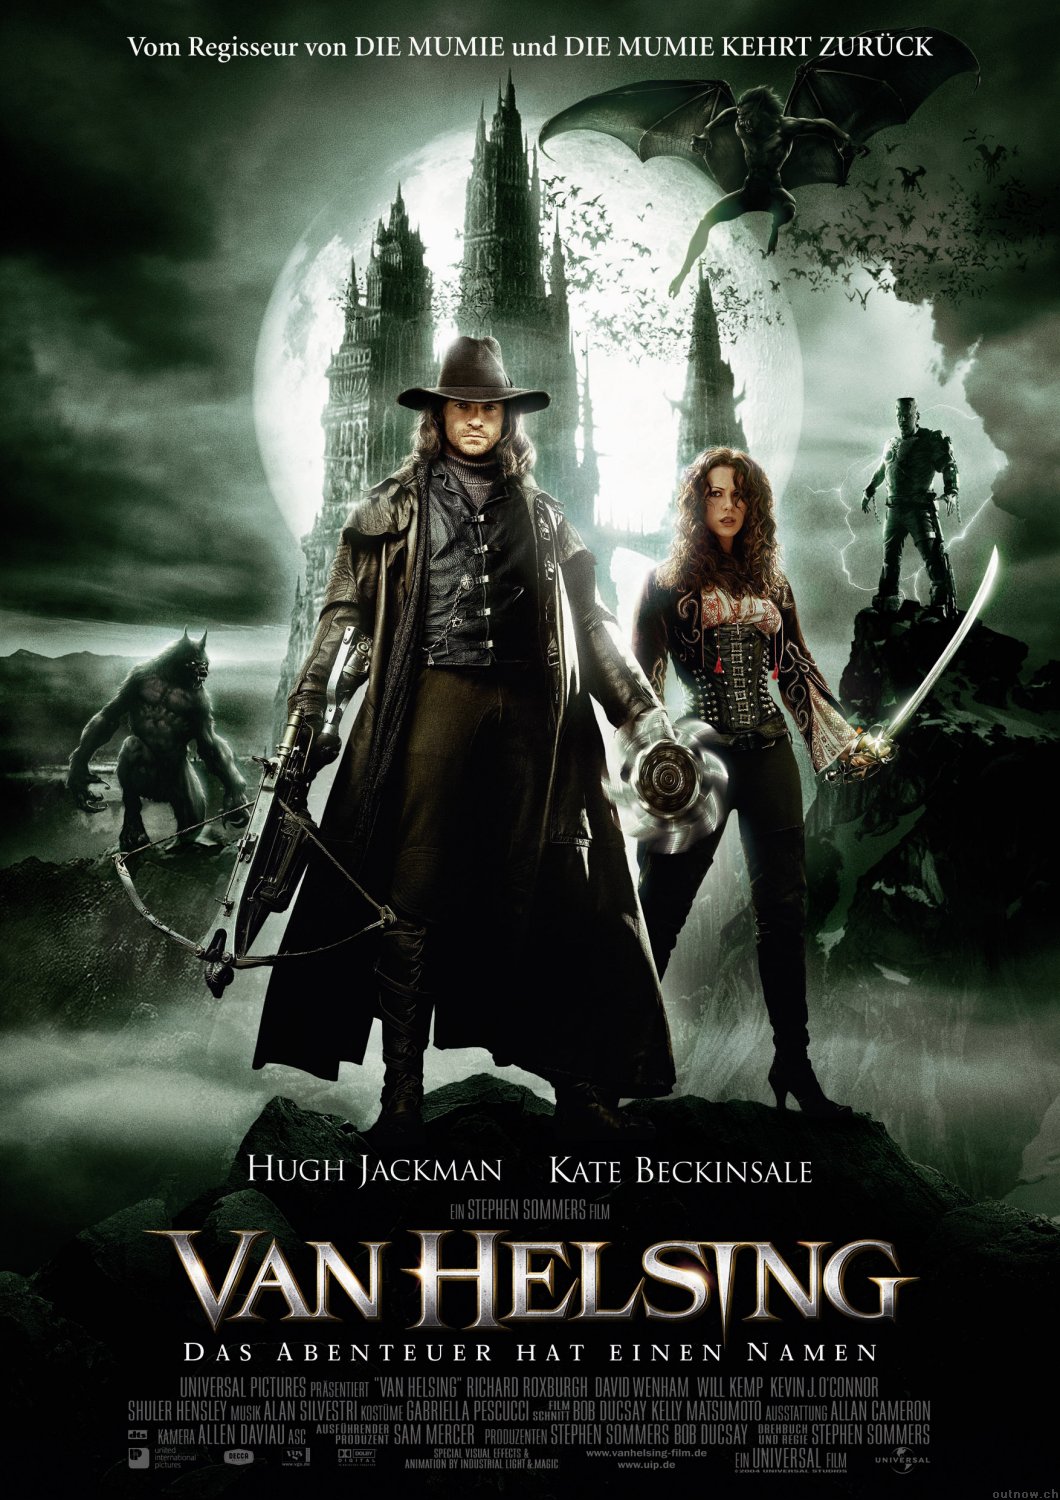 Van Helsing Tells The Story Of A Broken, Tortured Soul